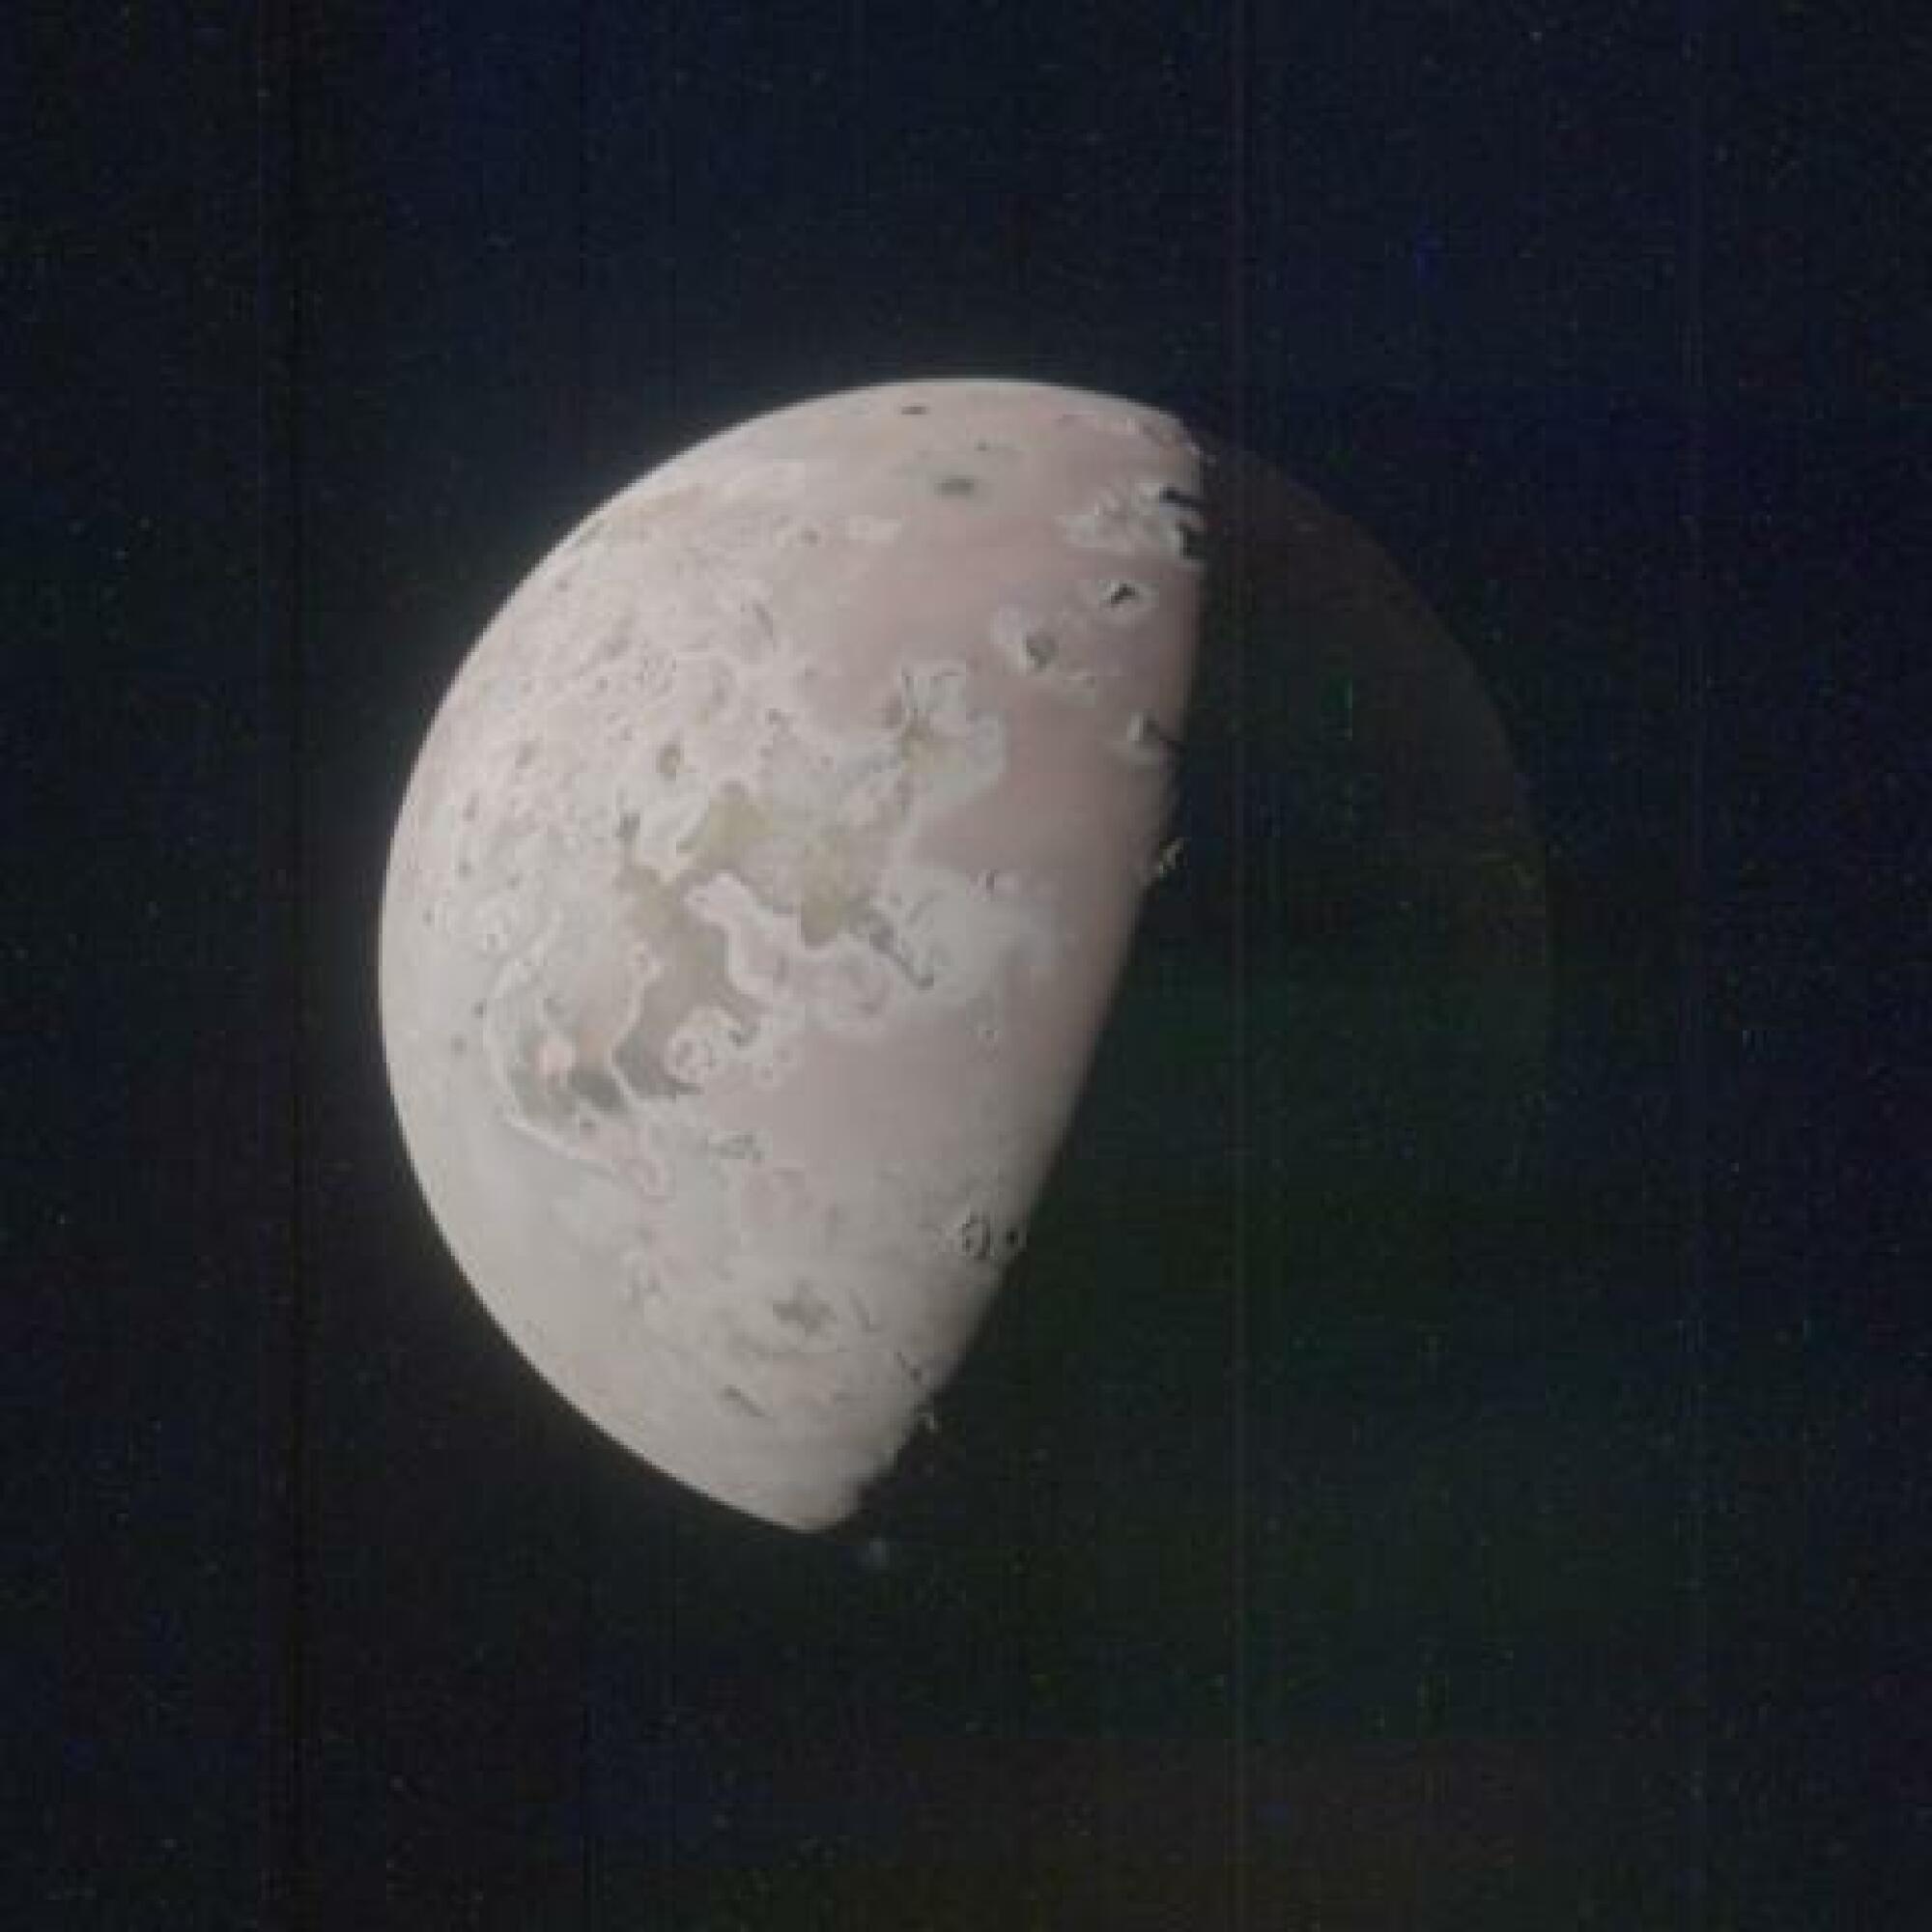 Le bas de cette image Io montre ce qui pourrait être un panache volcanique.